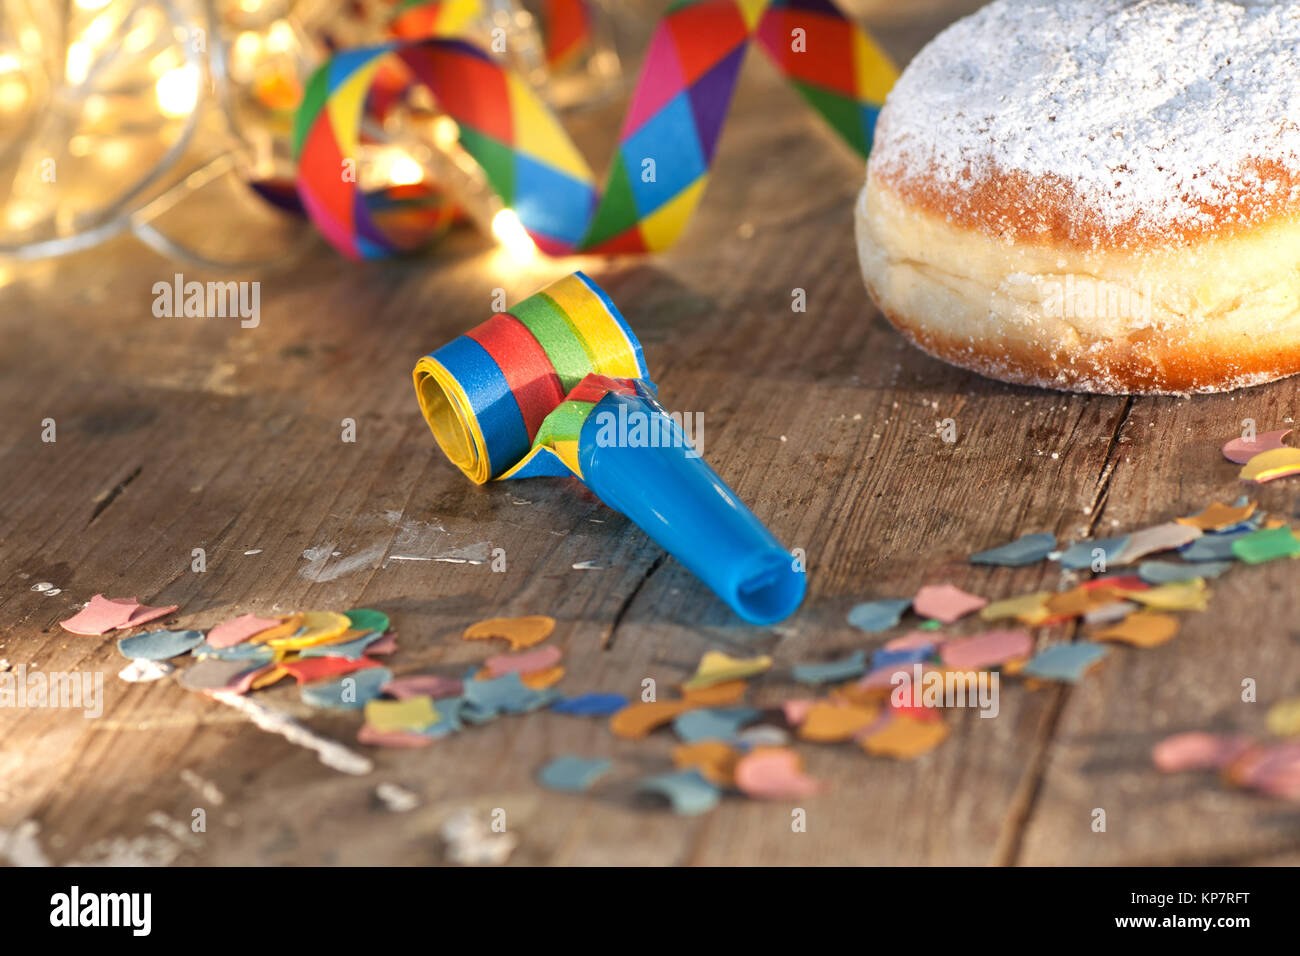 delicious donuts for mardi gras Stock Photo